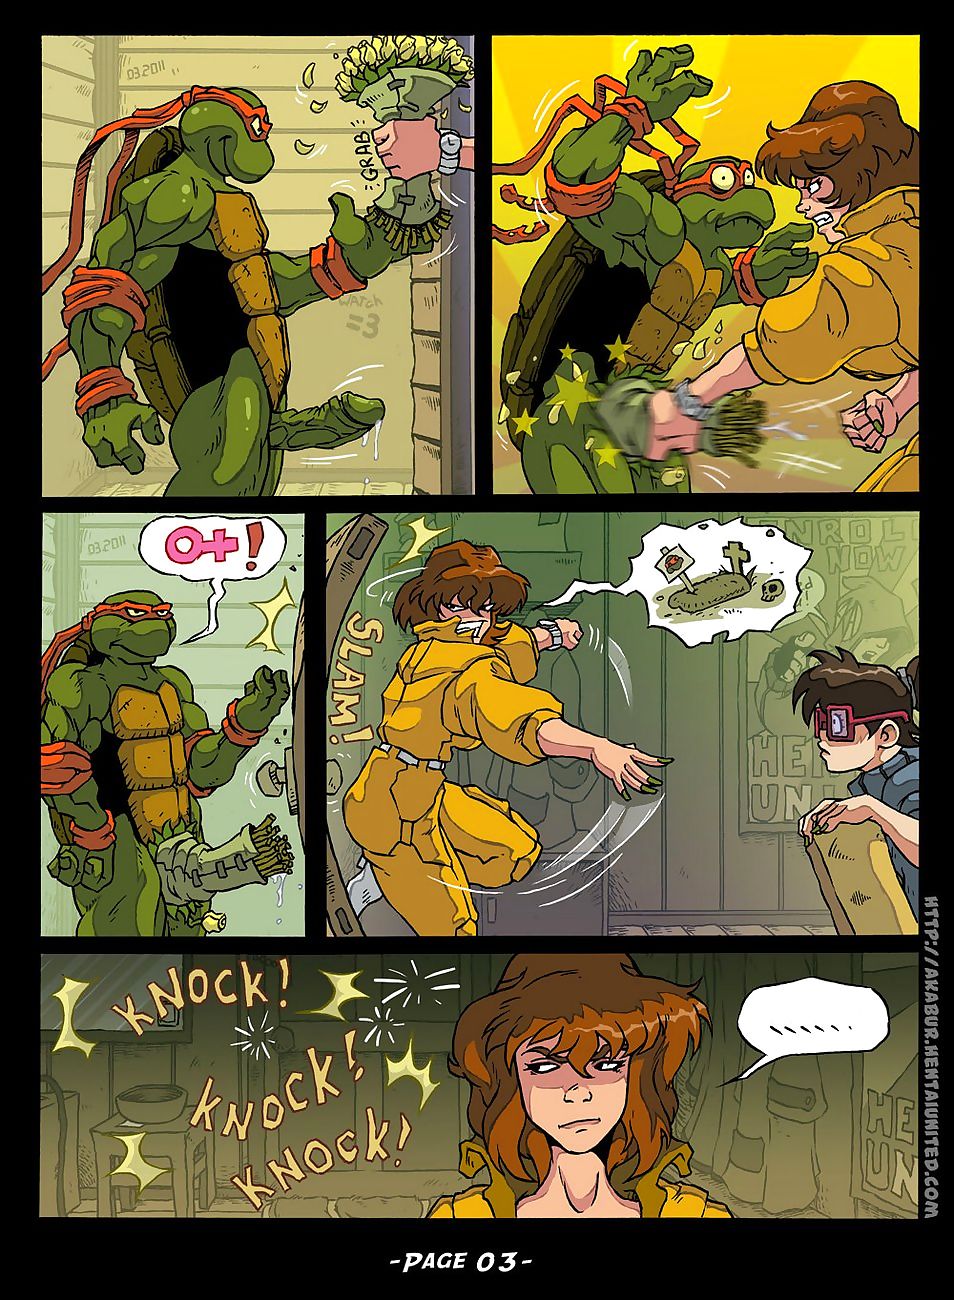 wojownicze żółwie ninja w dziwka Od kanał Sześć page 1